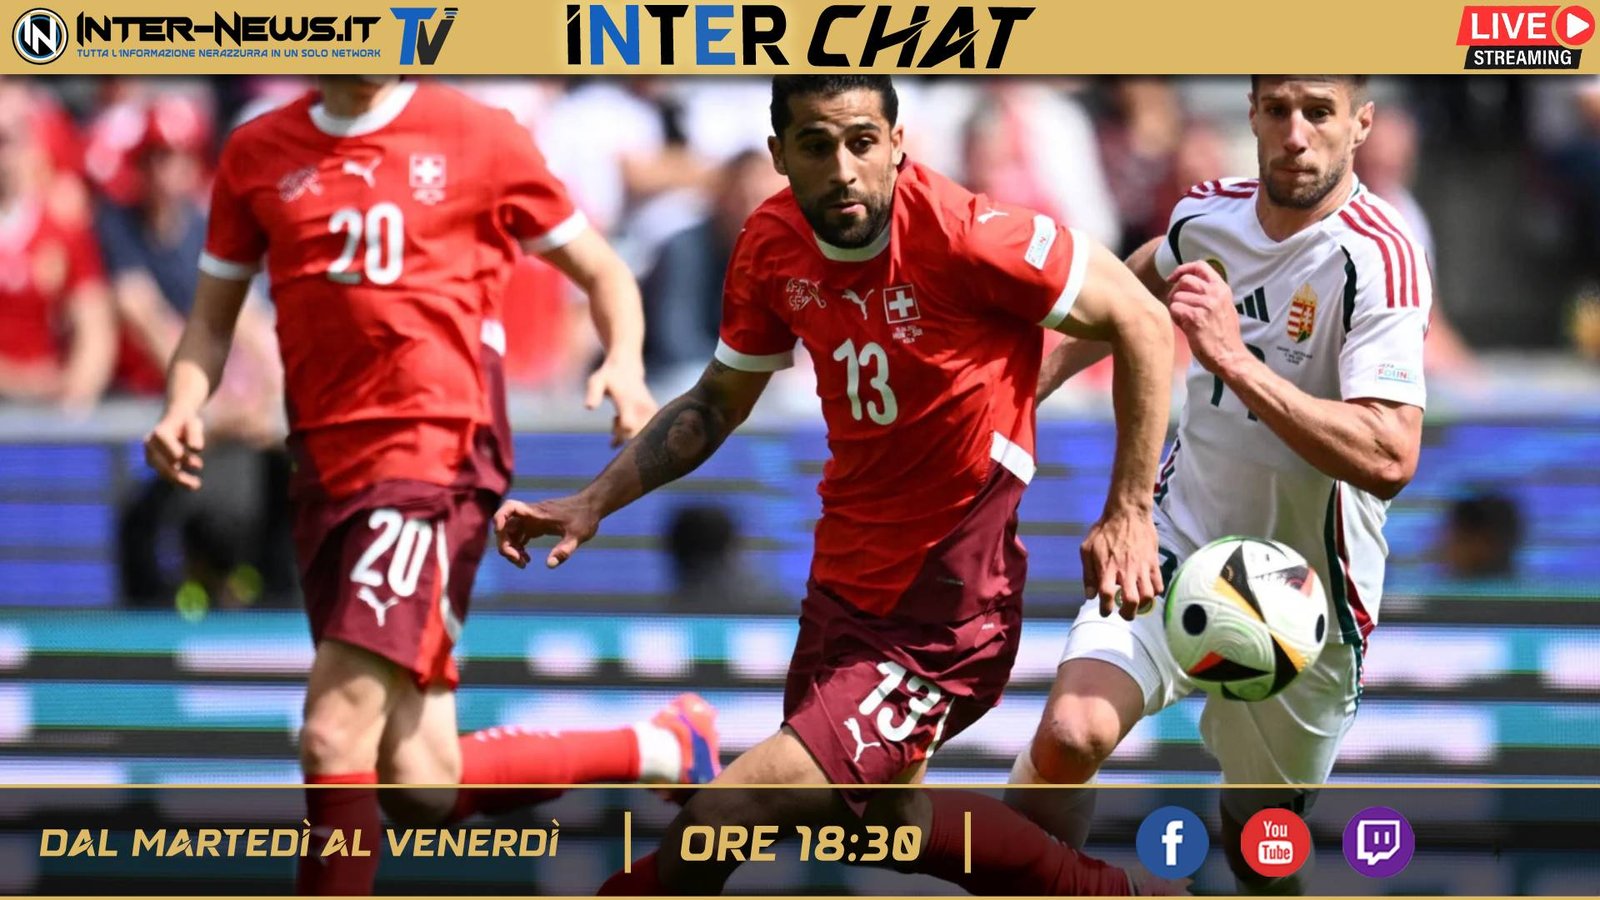 VIDEO ? Speciale Calciomercato, il focus sulla difesa | Inter Chat